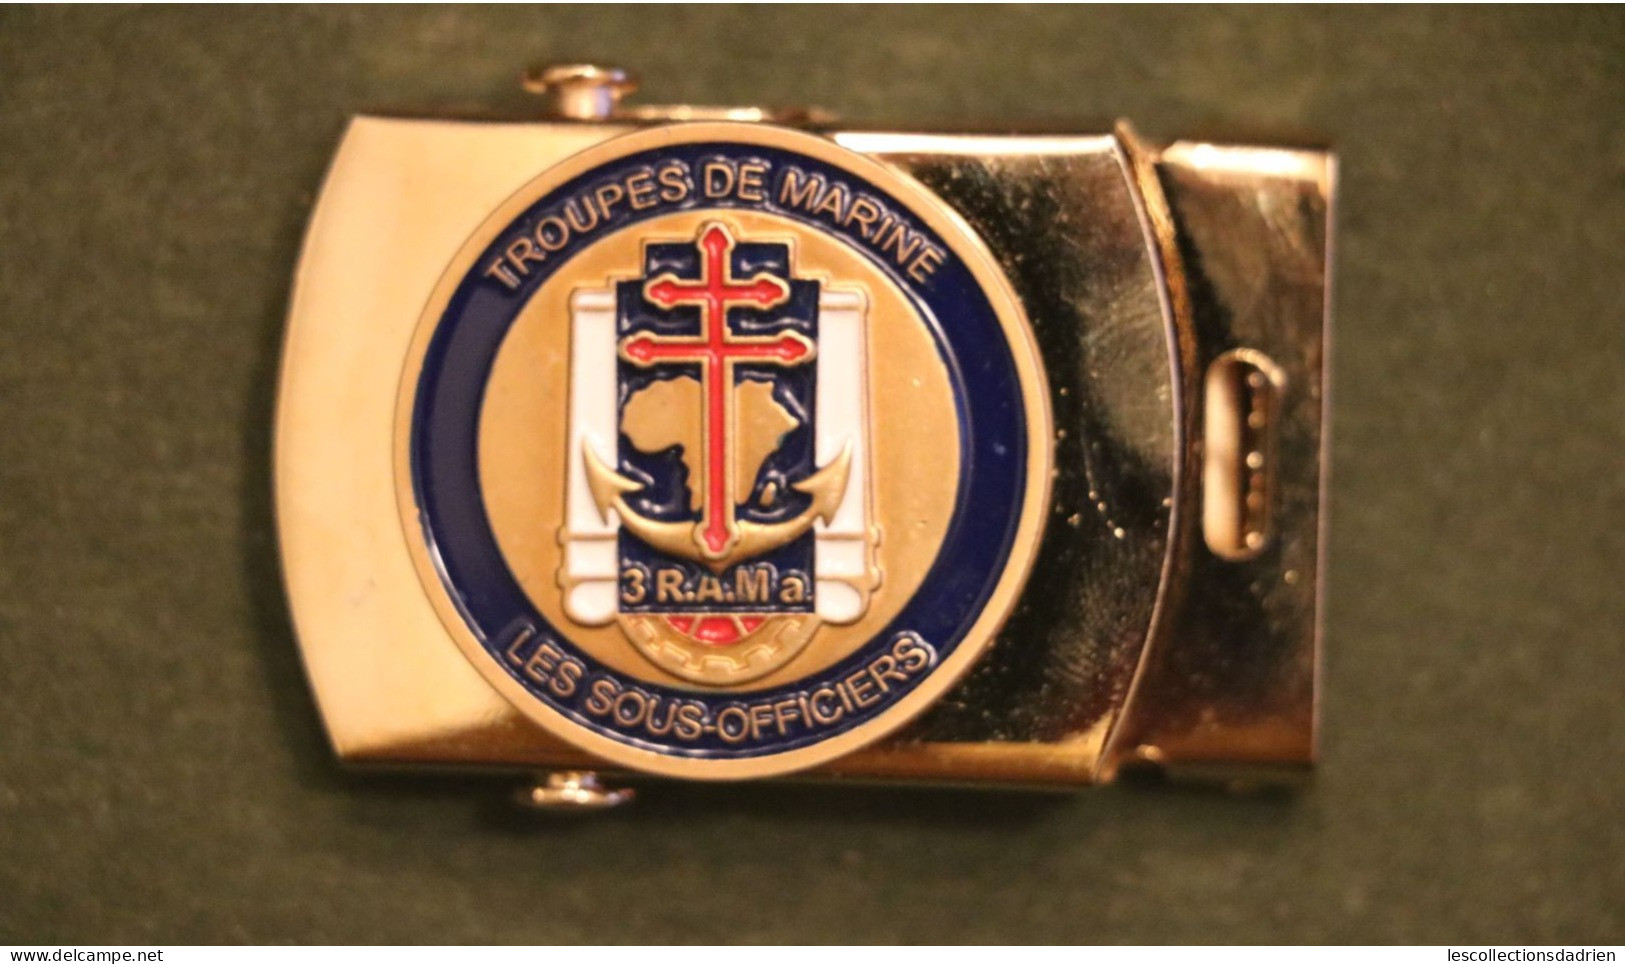 Boucle de ceinture ceinturon 3e Régiment d'artillerie de Marine RAMa - troupes de marine - les sous-officiers - buckle